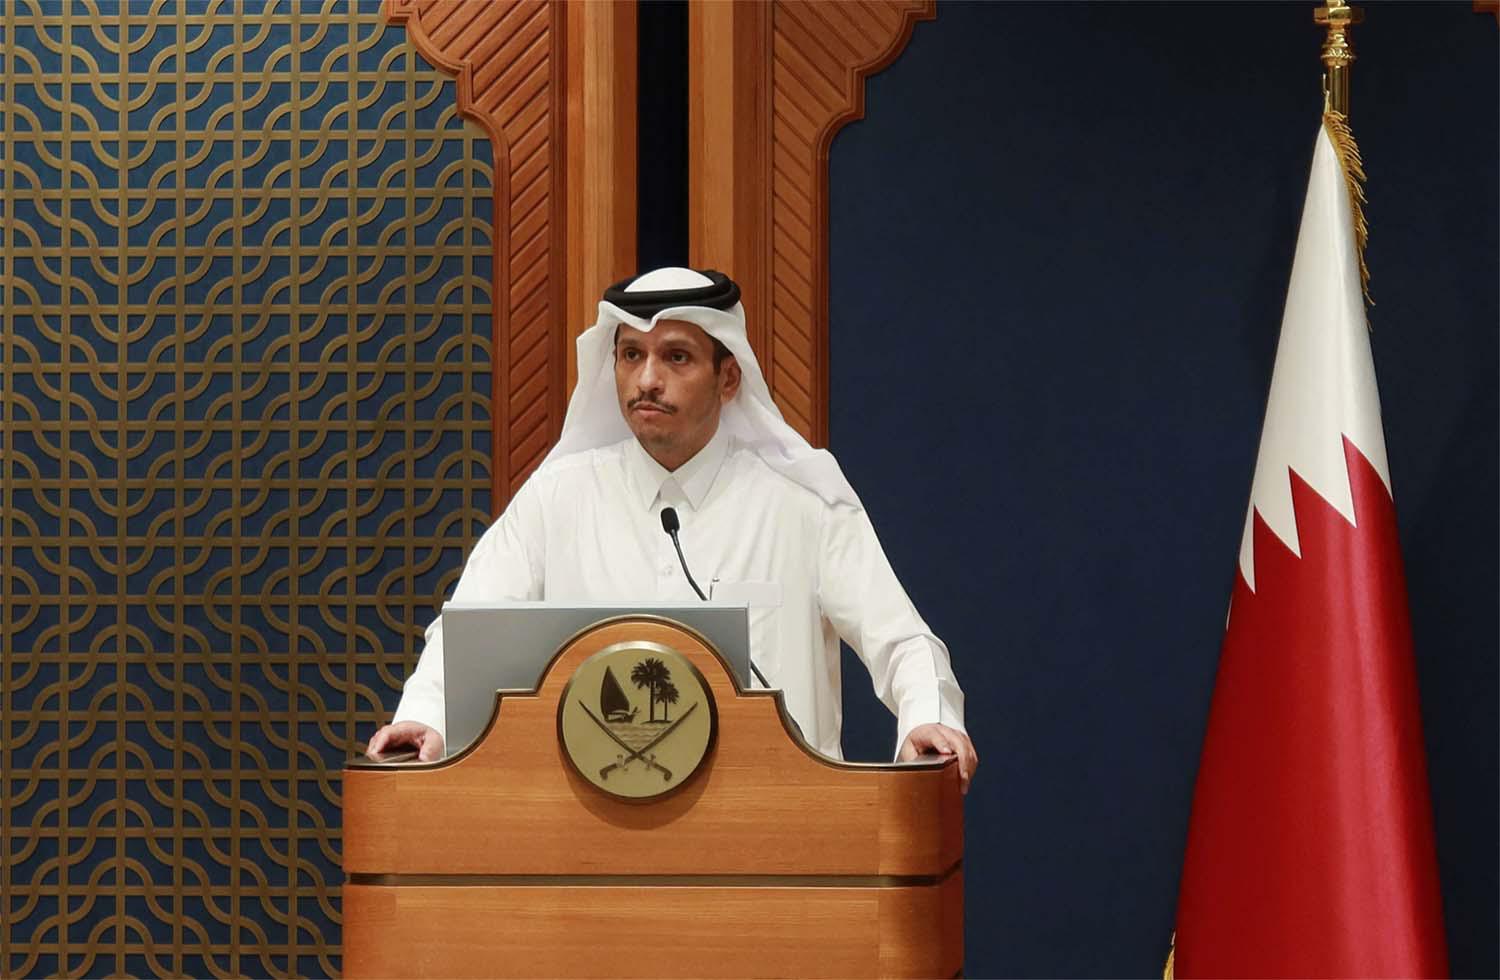 Qatar's PM Sheikh Mohammed bin Abdulrahman Al Thani 